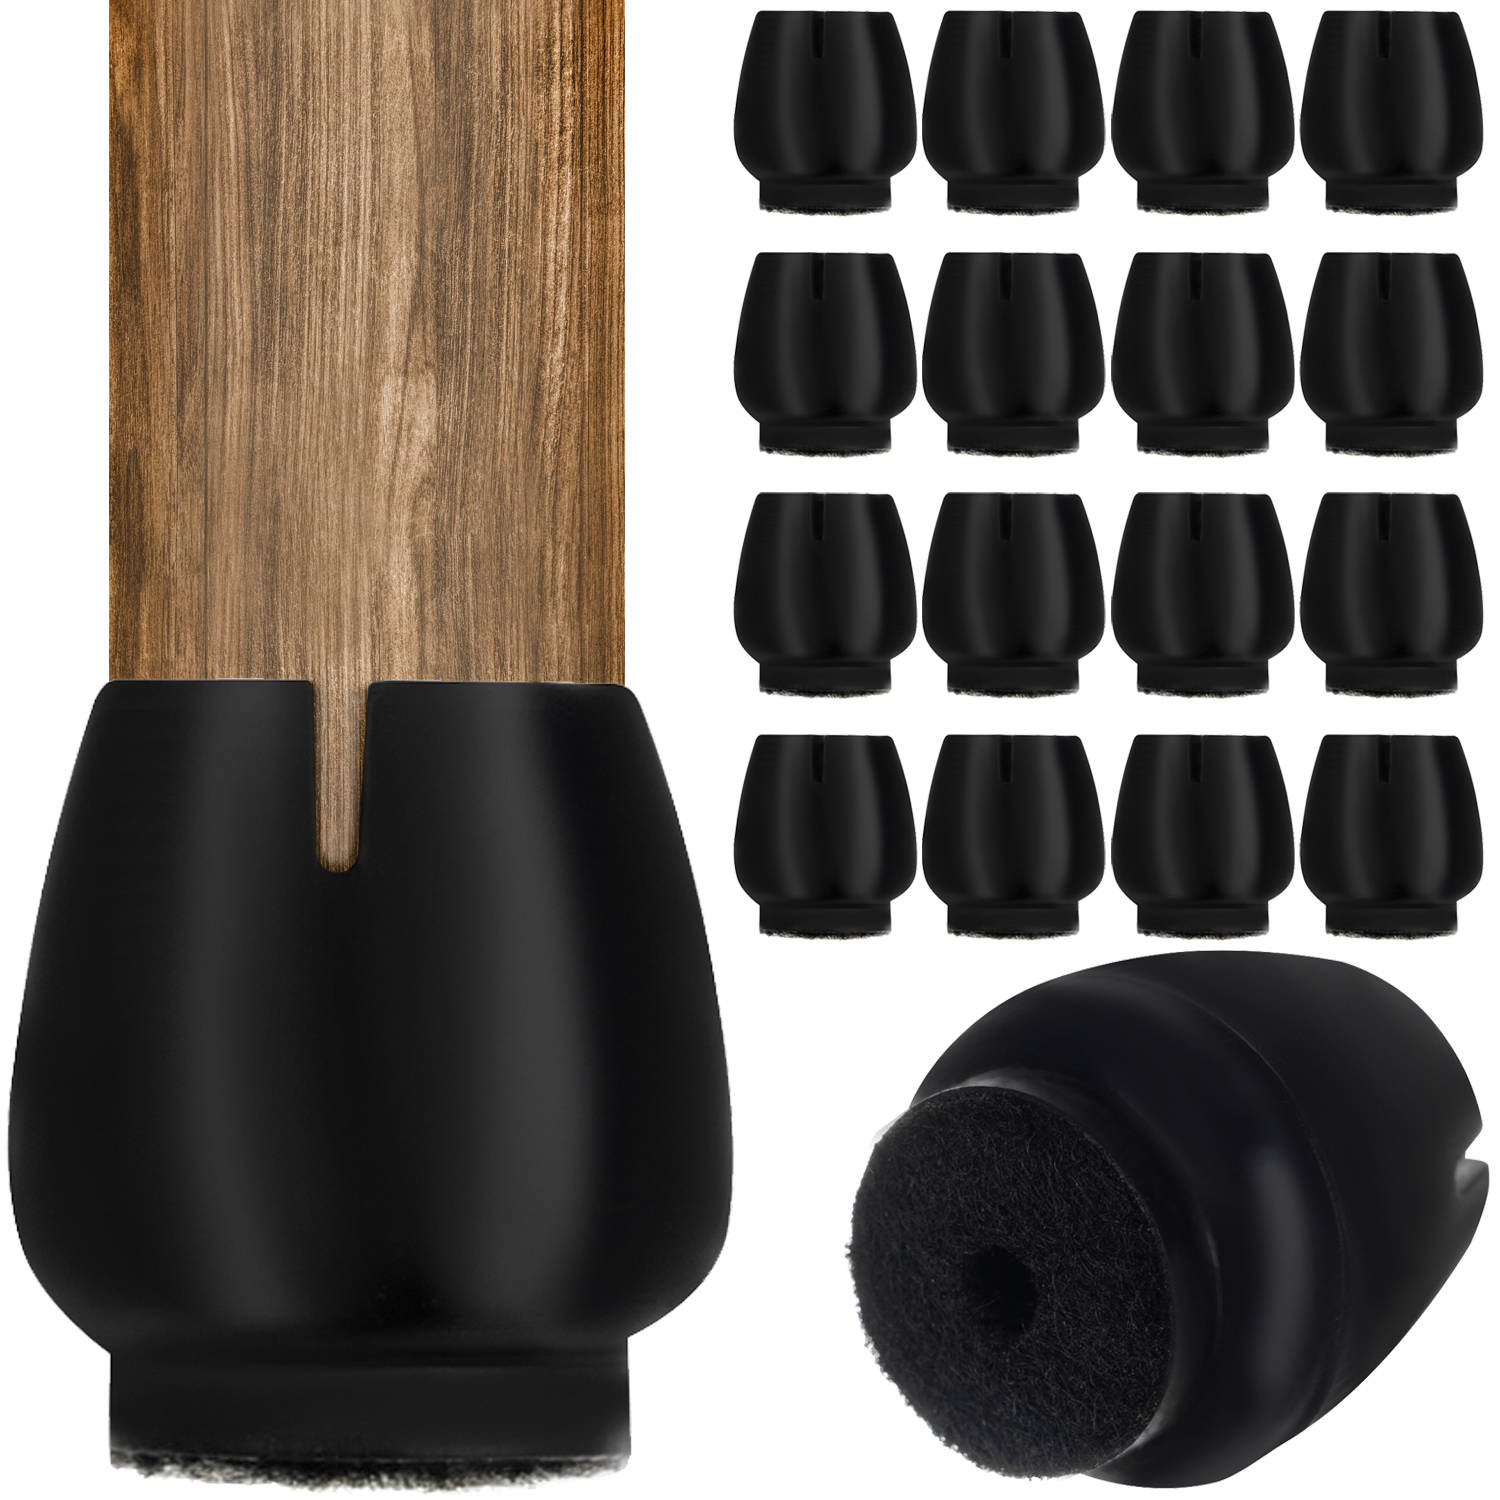 Vízálló – szilikon székláb védőhuzatok a padló és a széklábak védelmére – 16 db-os csomagban, fekete szín (BB-17235) (8)